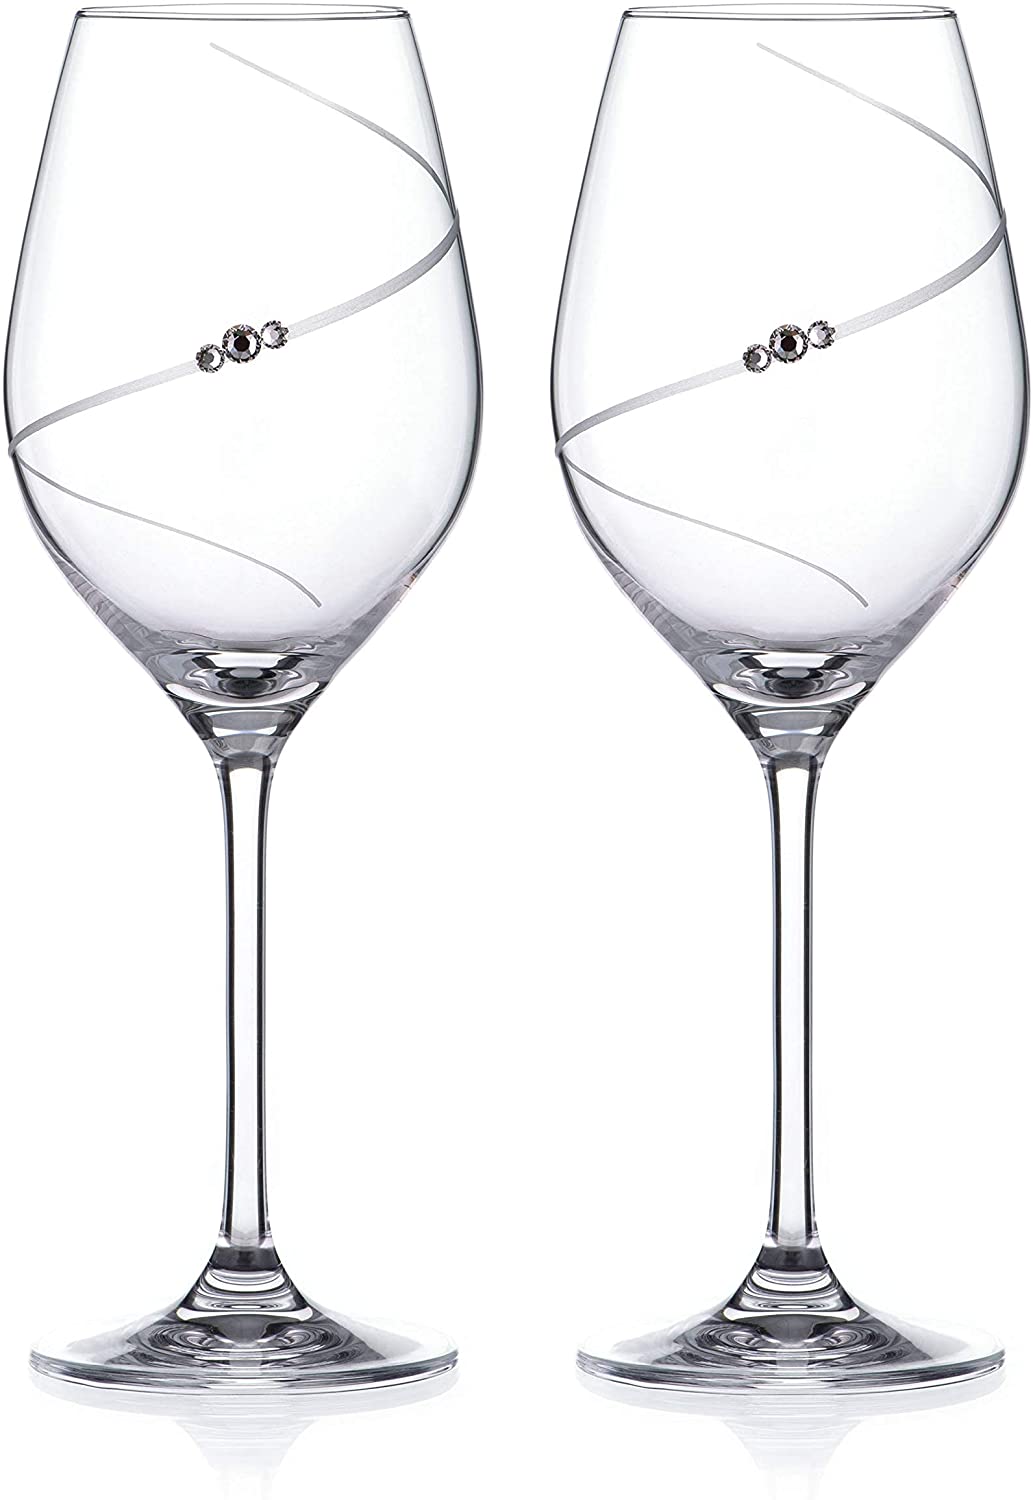 Diamante sklenice na bílé víno Silhouette City s krystaly Swarovski v prémiovém saténovém balení 360ml 2KS